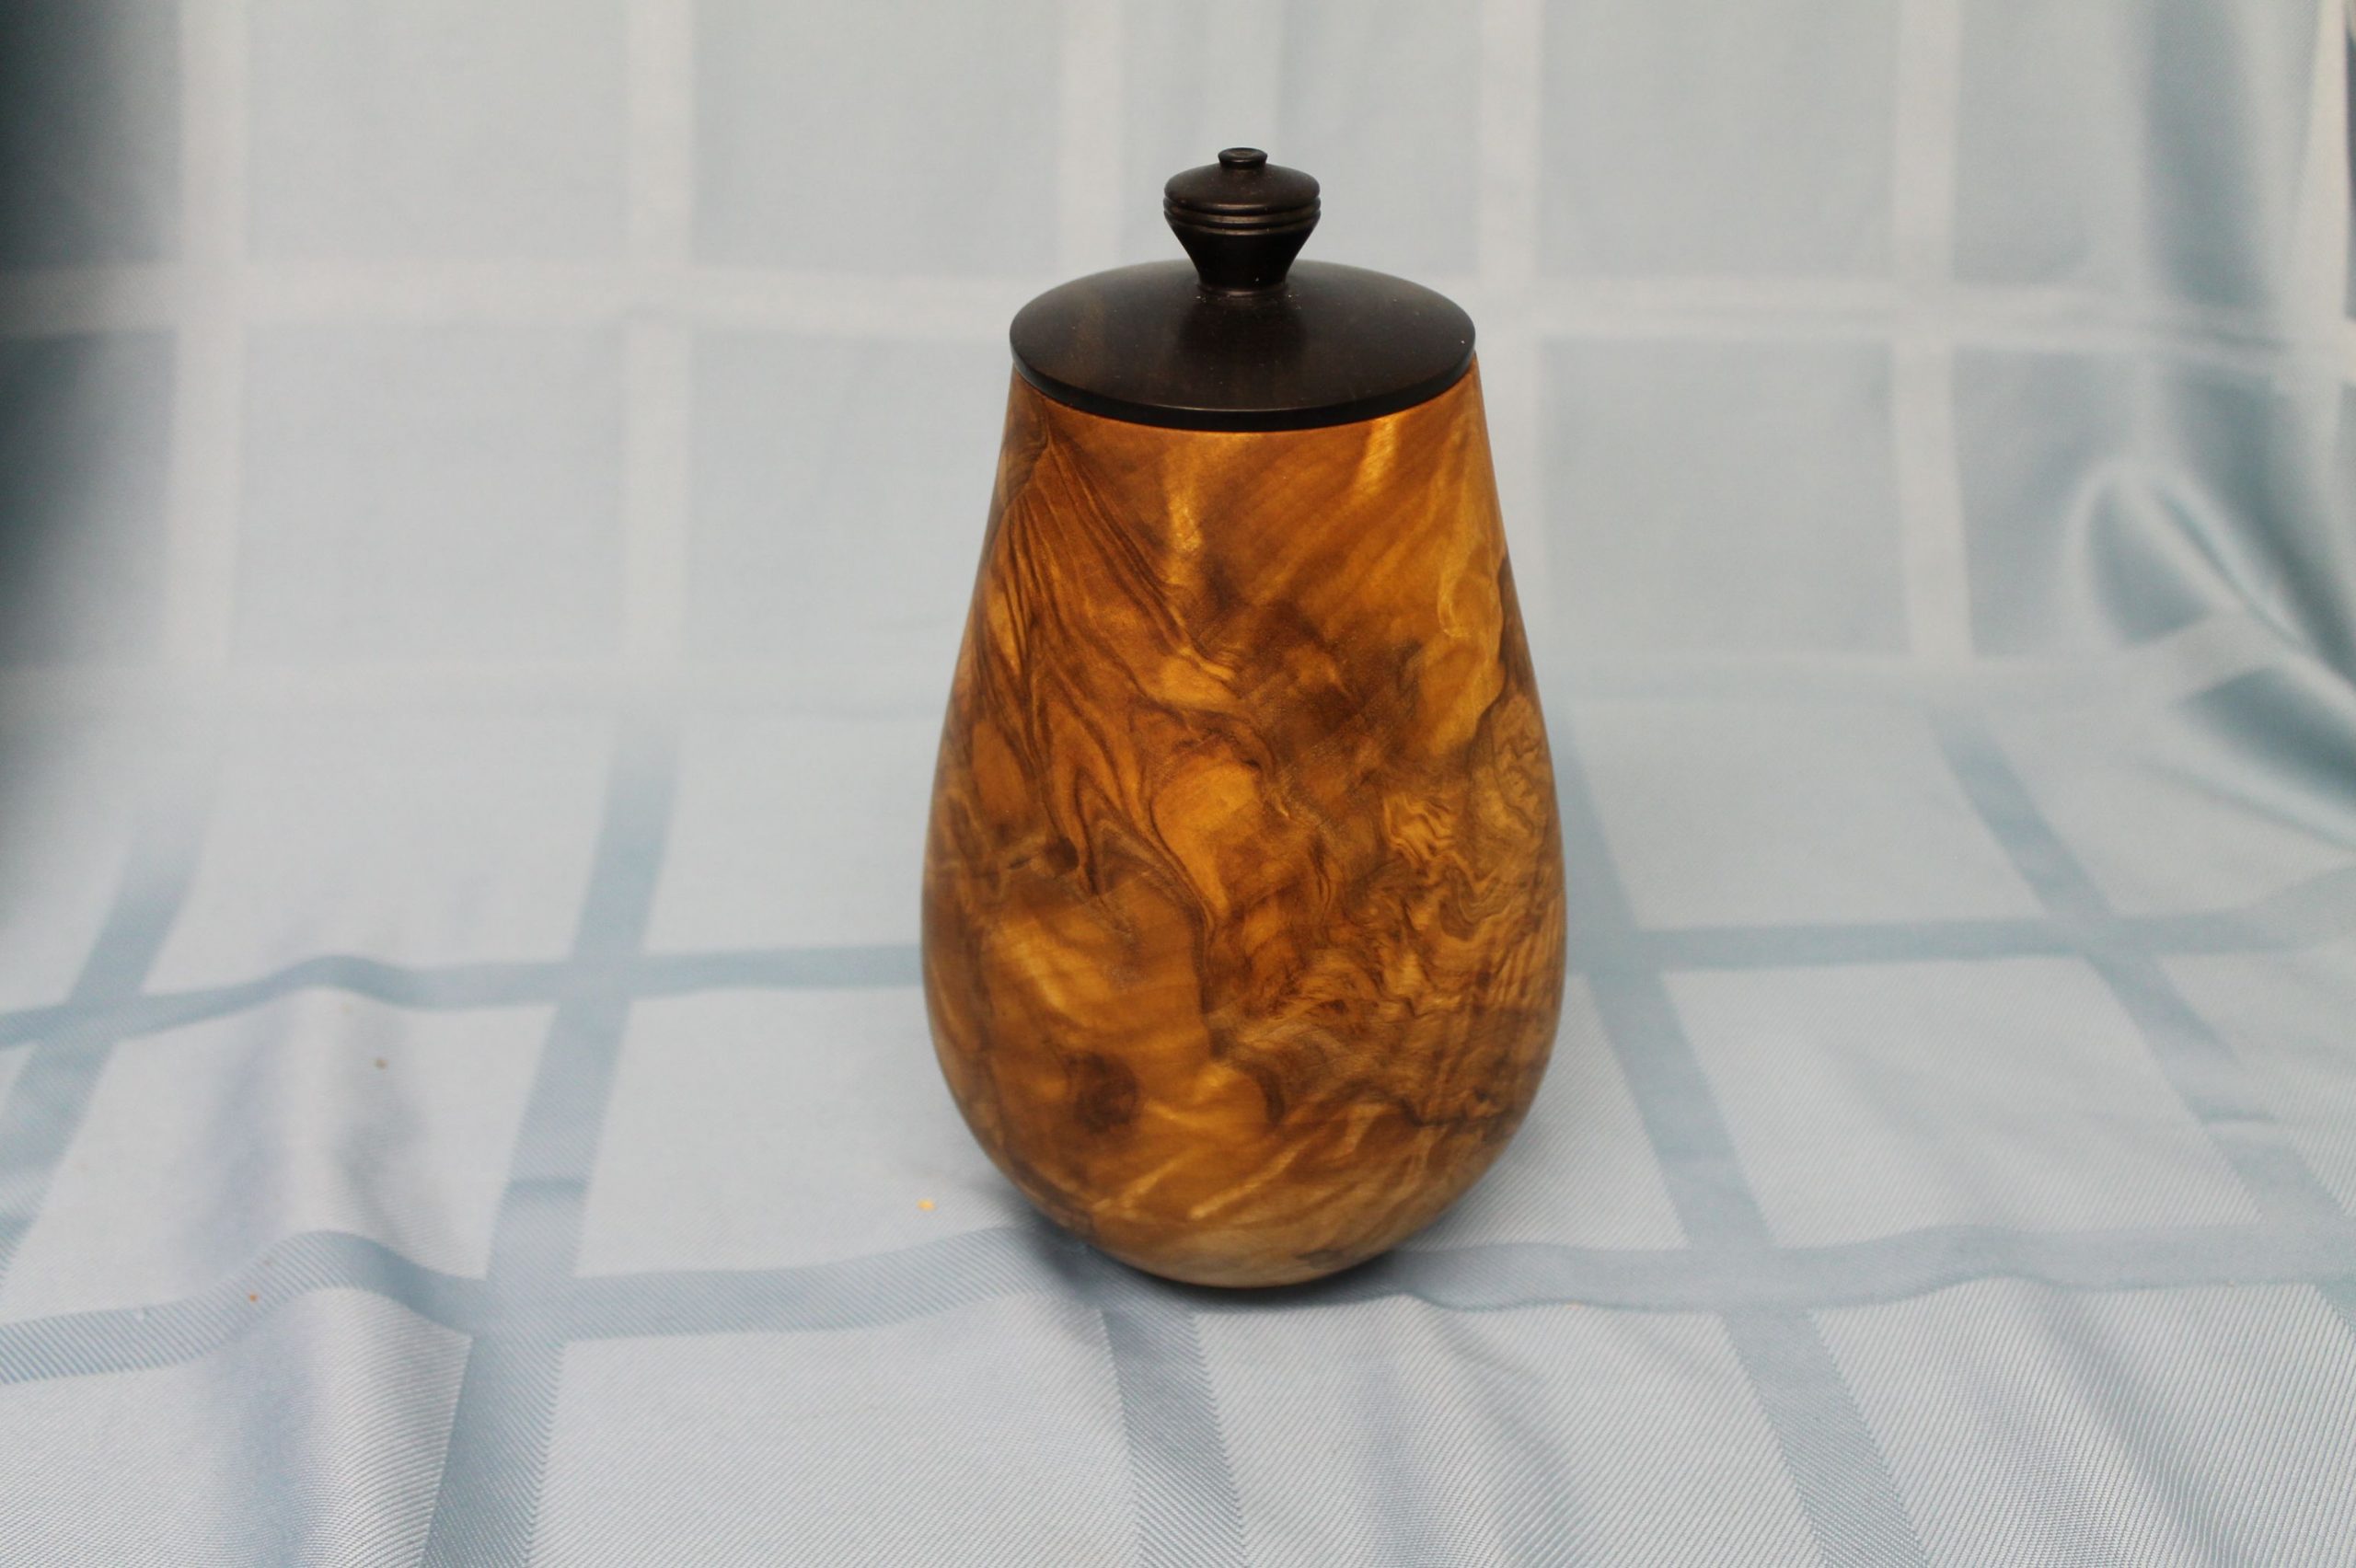 Maple burl vase, blackwood lid